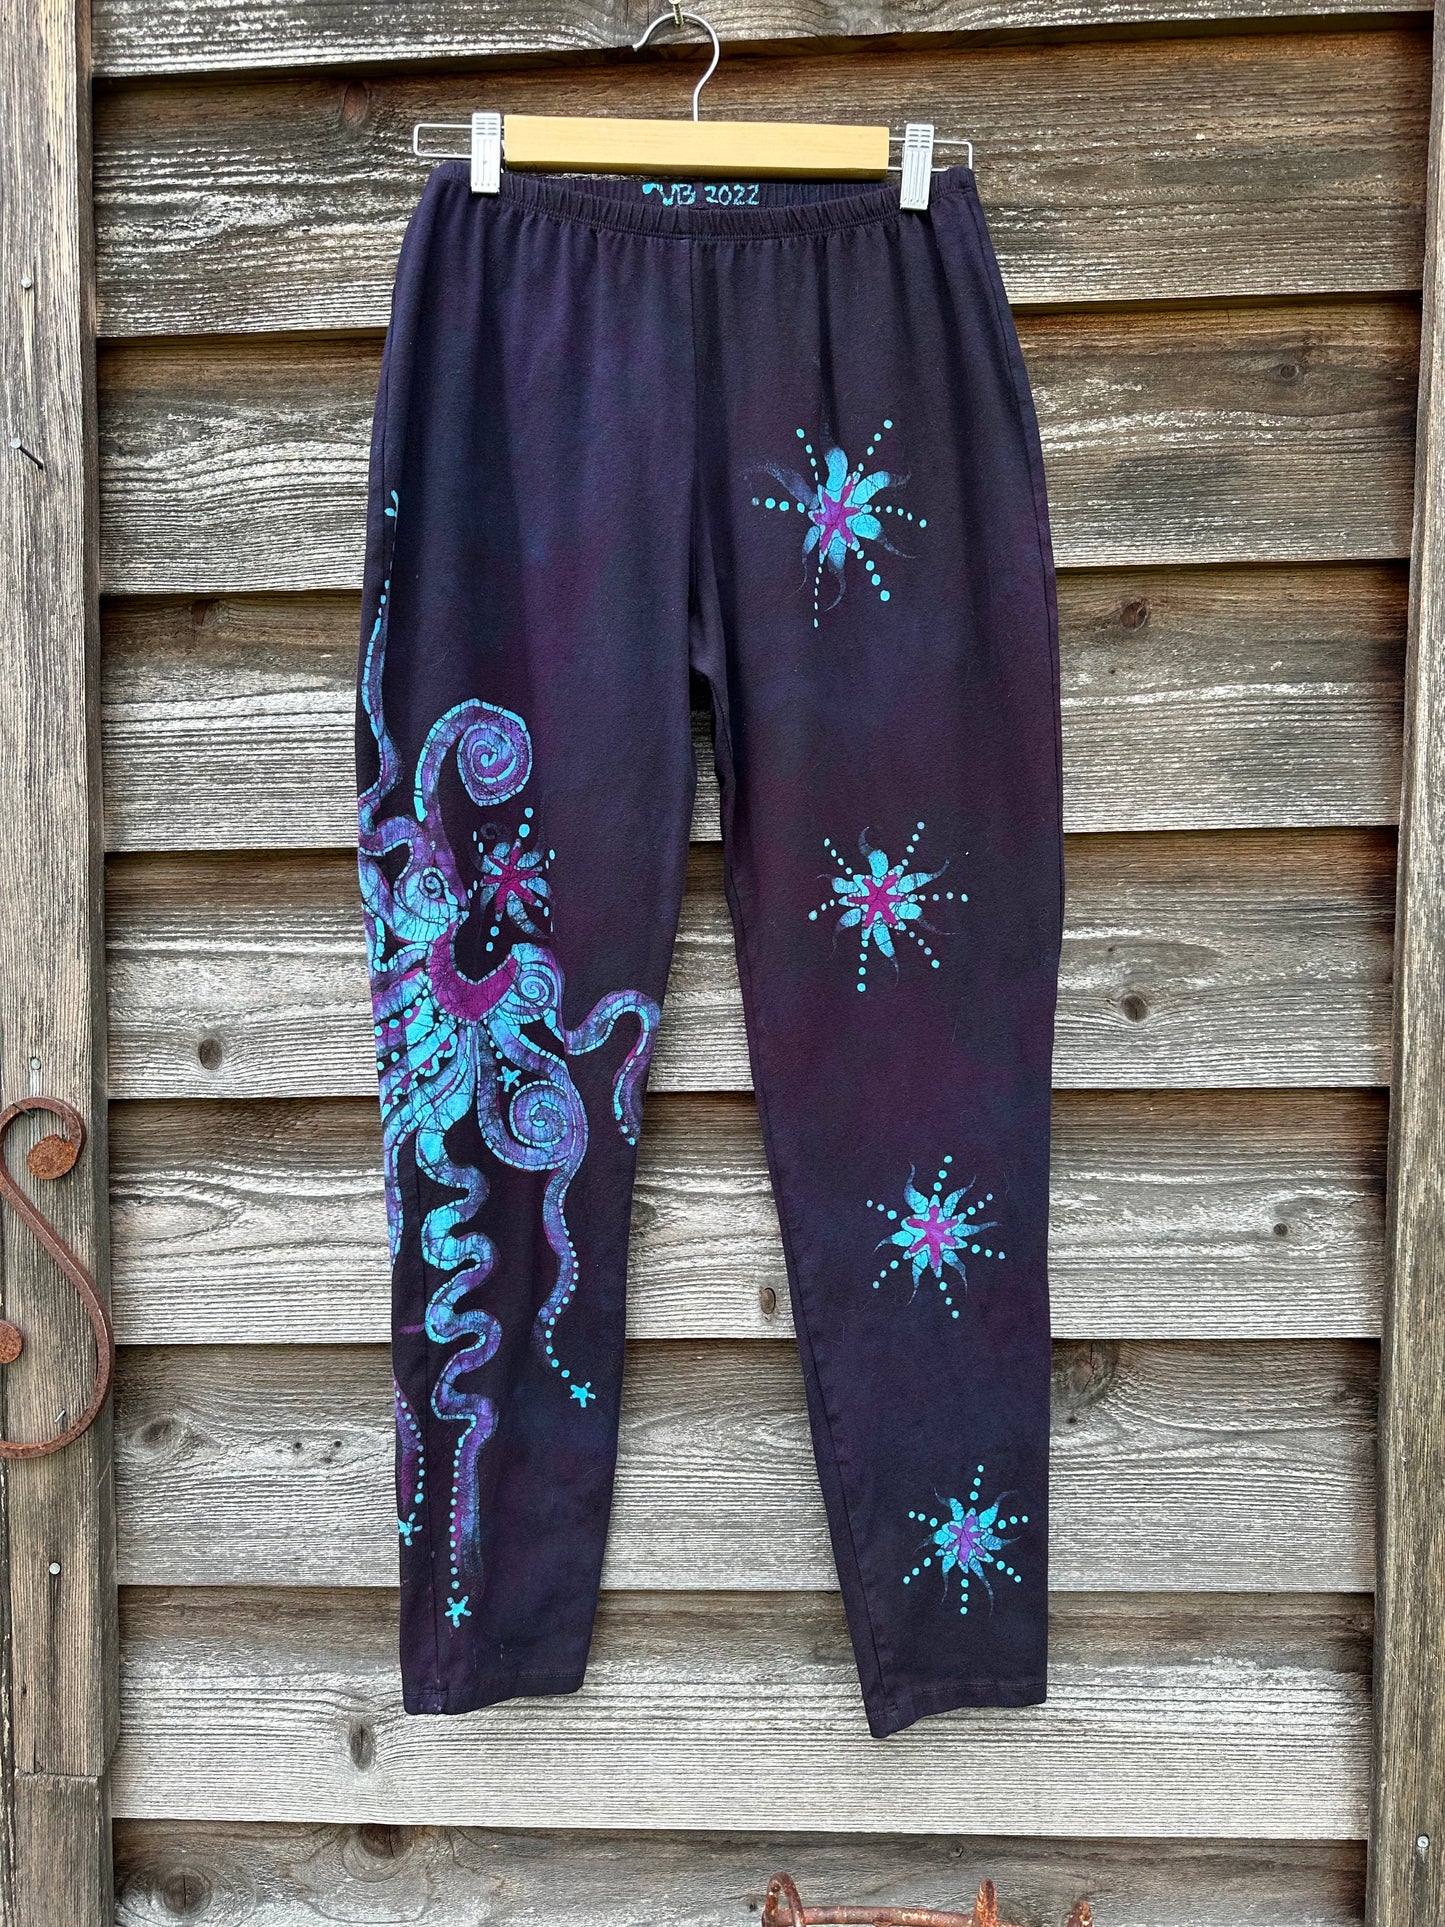 Draft of Deep Purple and Turquoise Moon & Star Batik Leggings leggings batikwalla 